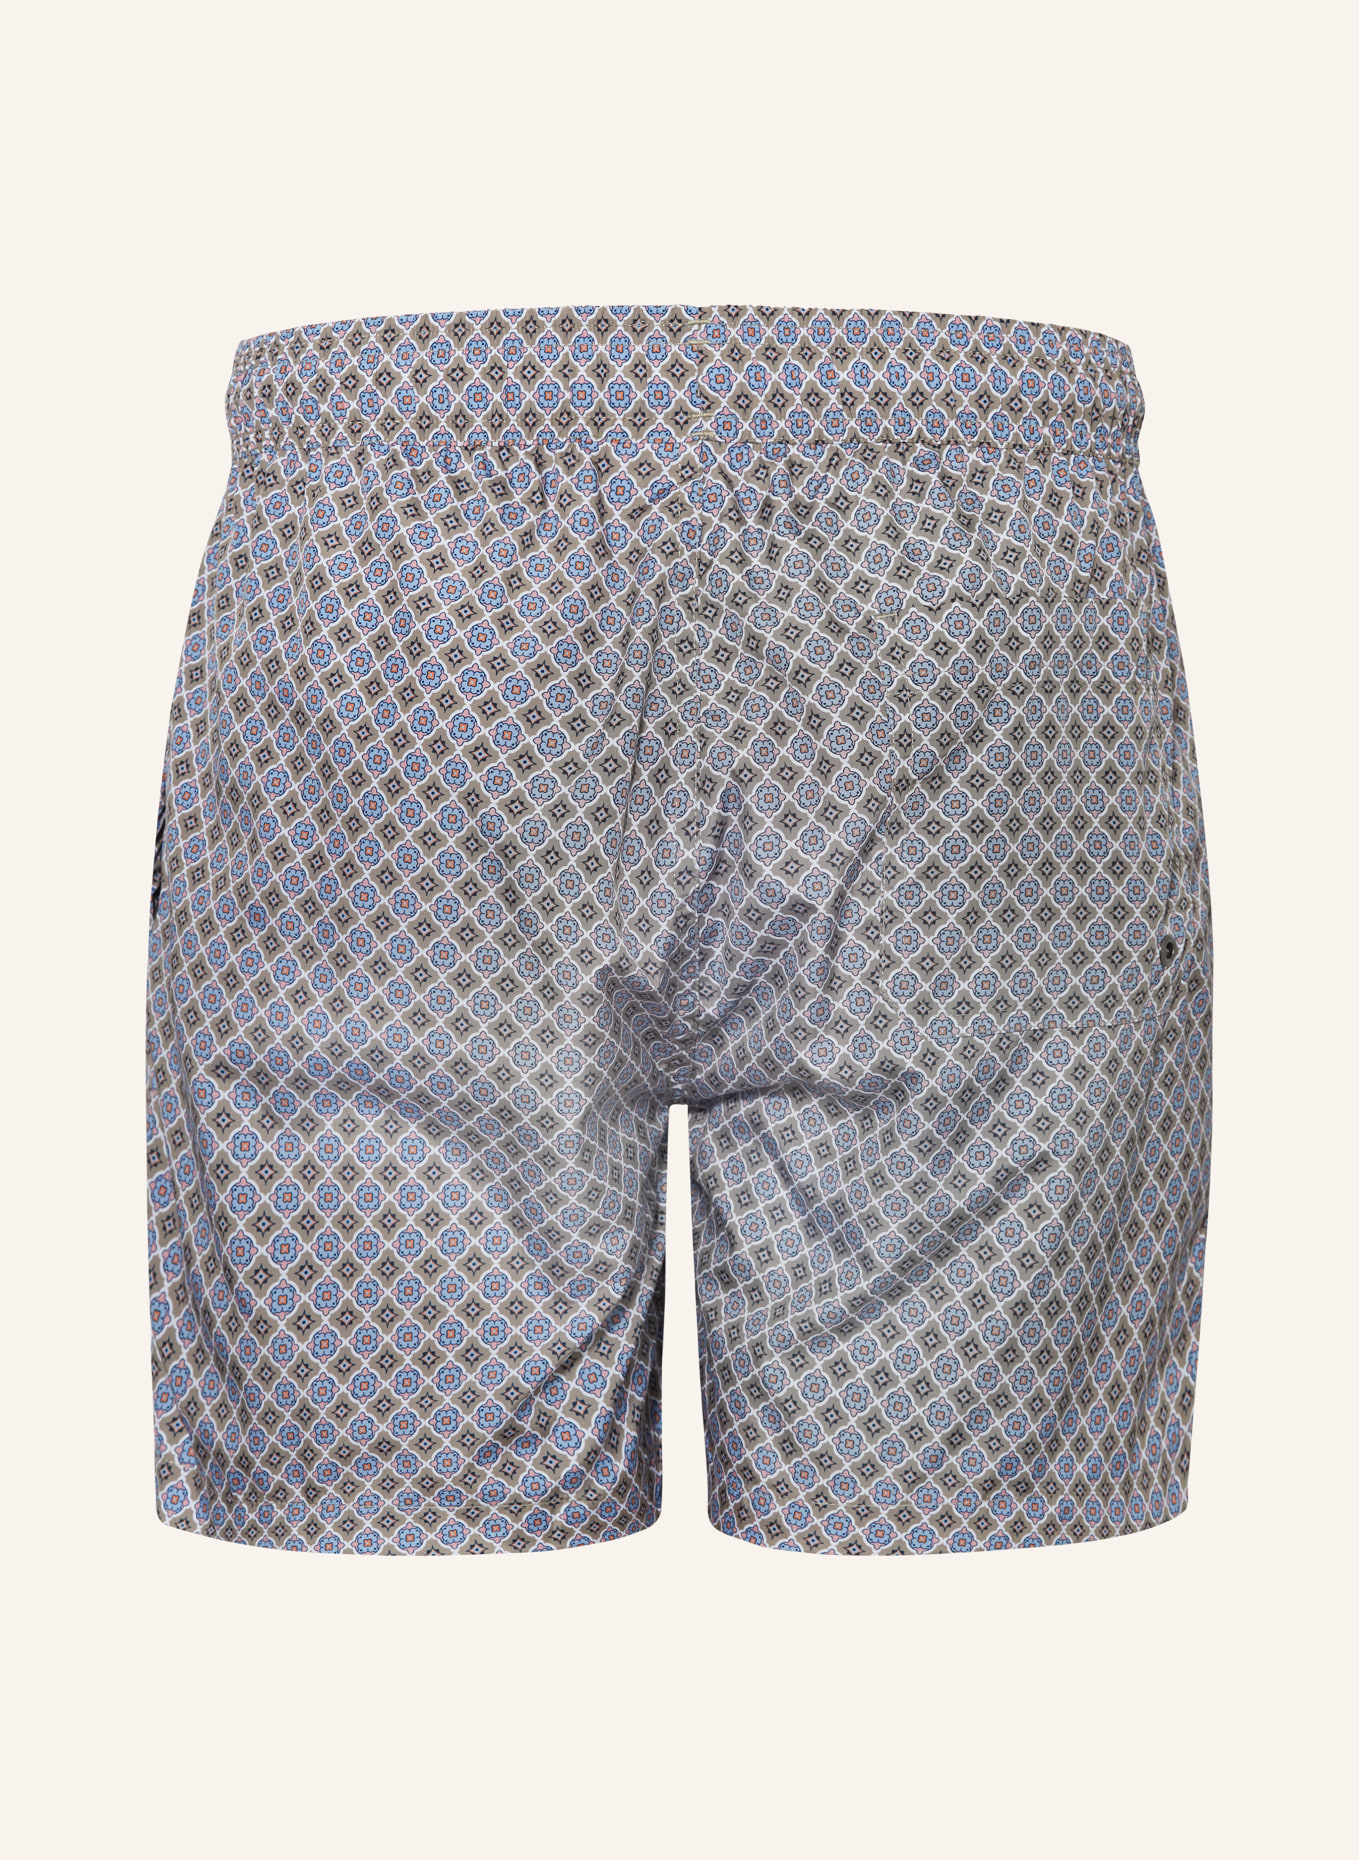 mey Swim shorts series VINTAGE, Color: OLIVE/ LIGHT BLUE/ PINK (Image 2)